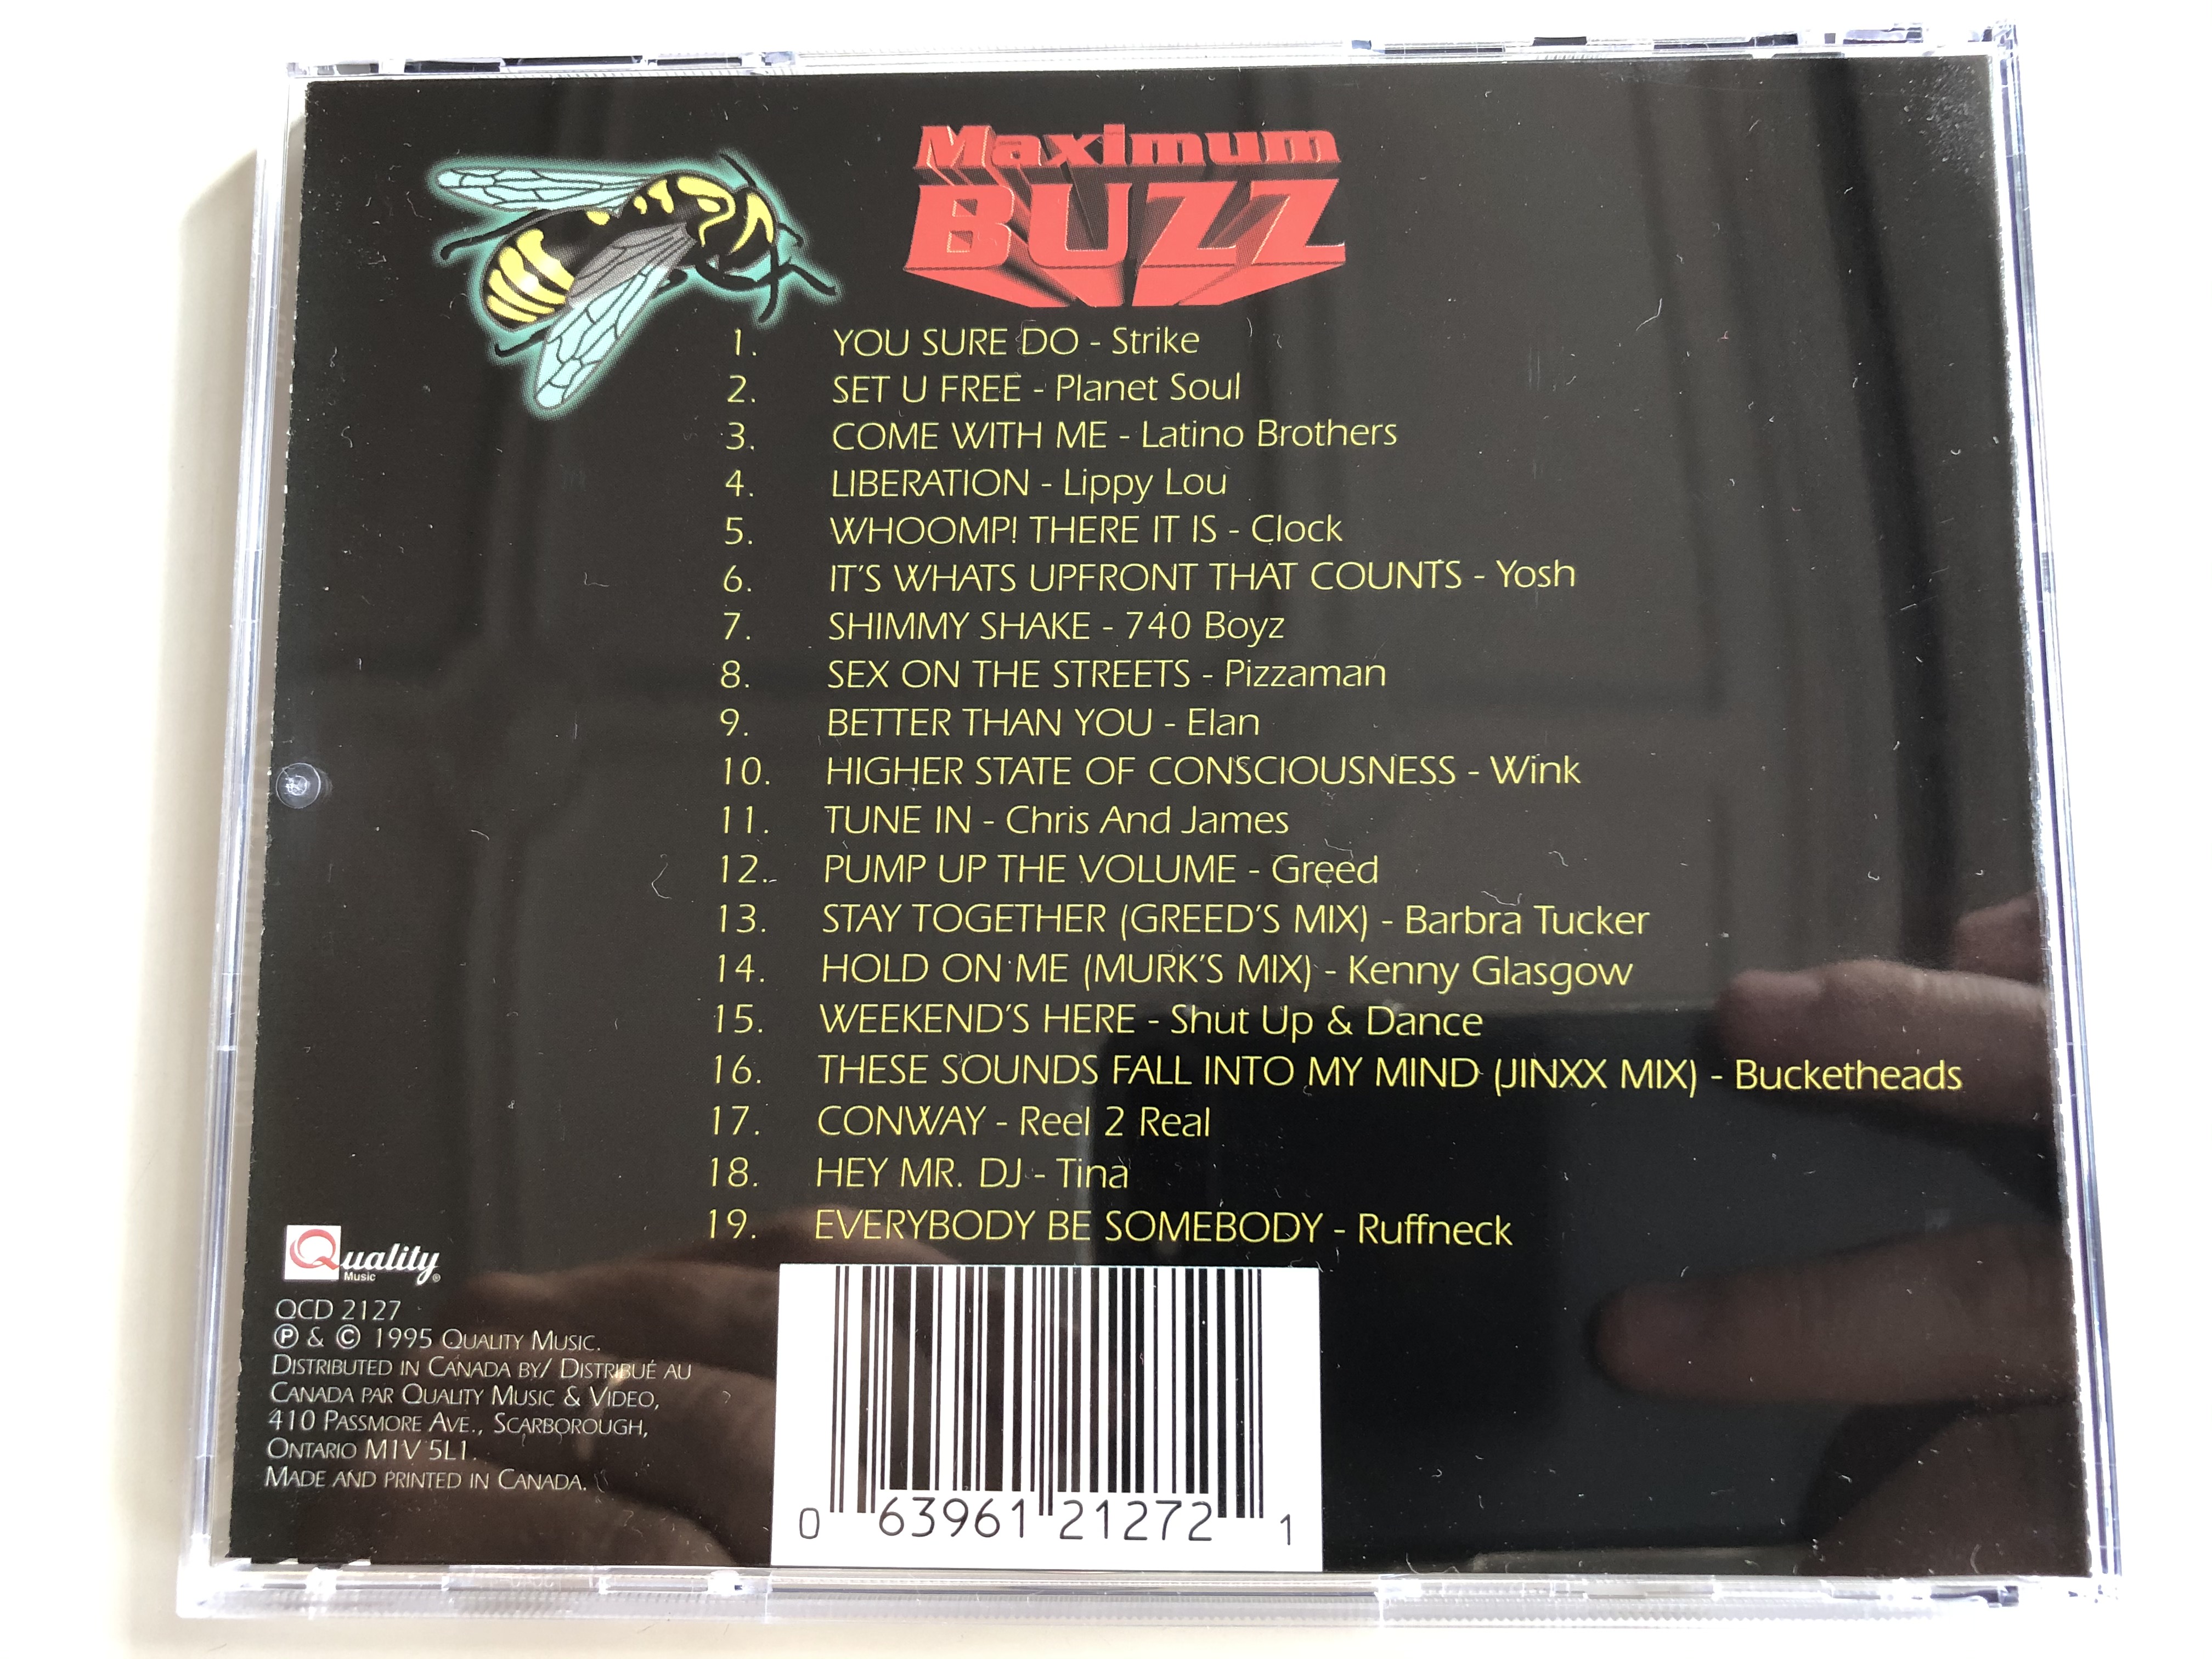 maximum-buzz-19-essential-club-tracks-quality-music-audio-cd-1995-qcd-2127-5-.jpg